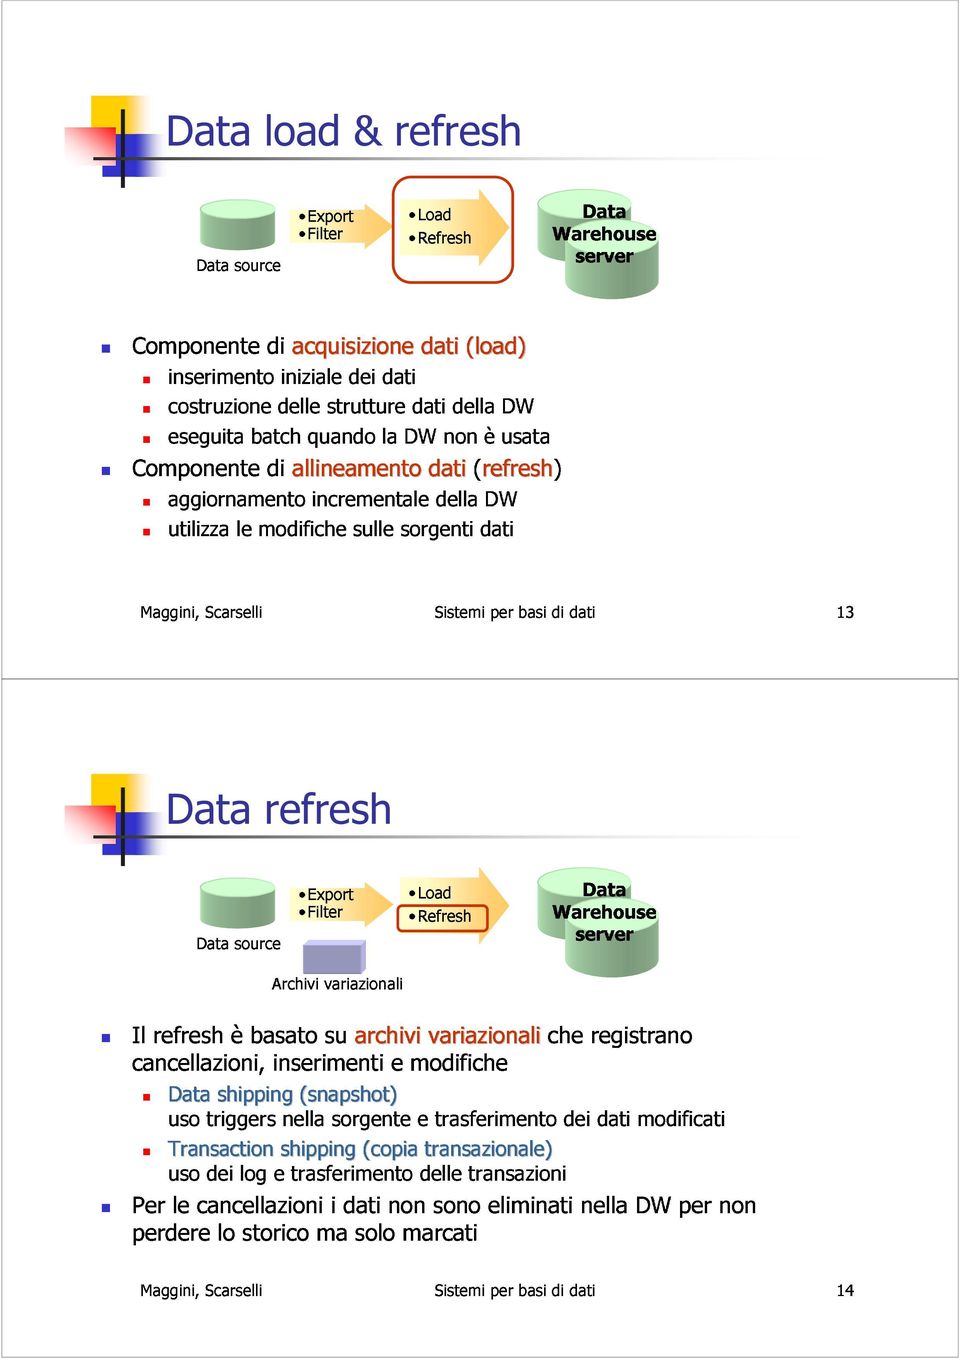 refreshèbasato Data source Export cancellazioni, Archivi Filter inserimenti su variazionali Load Refresh Warehouse archivi variazionaliche server Data Data triggersnella shipping(snapshot snapshot)